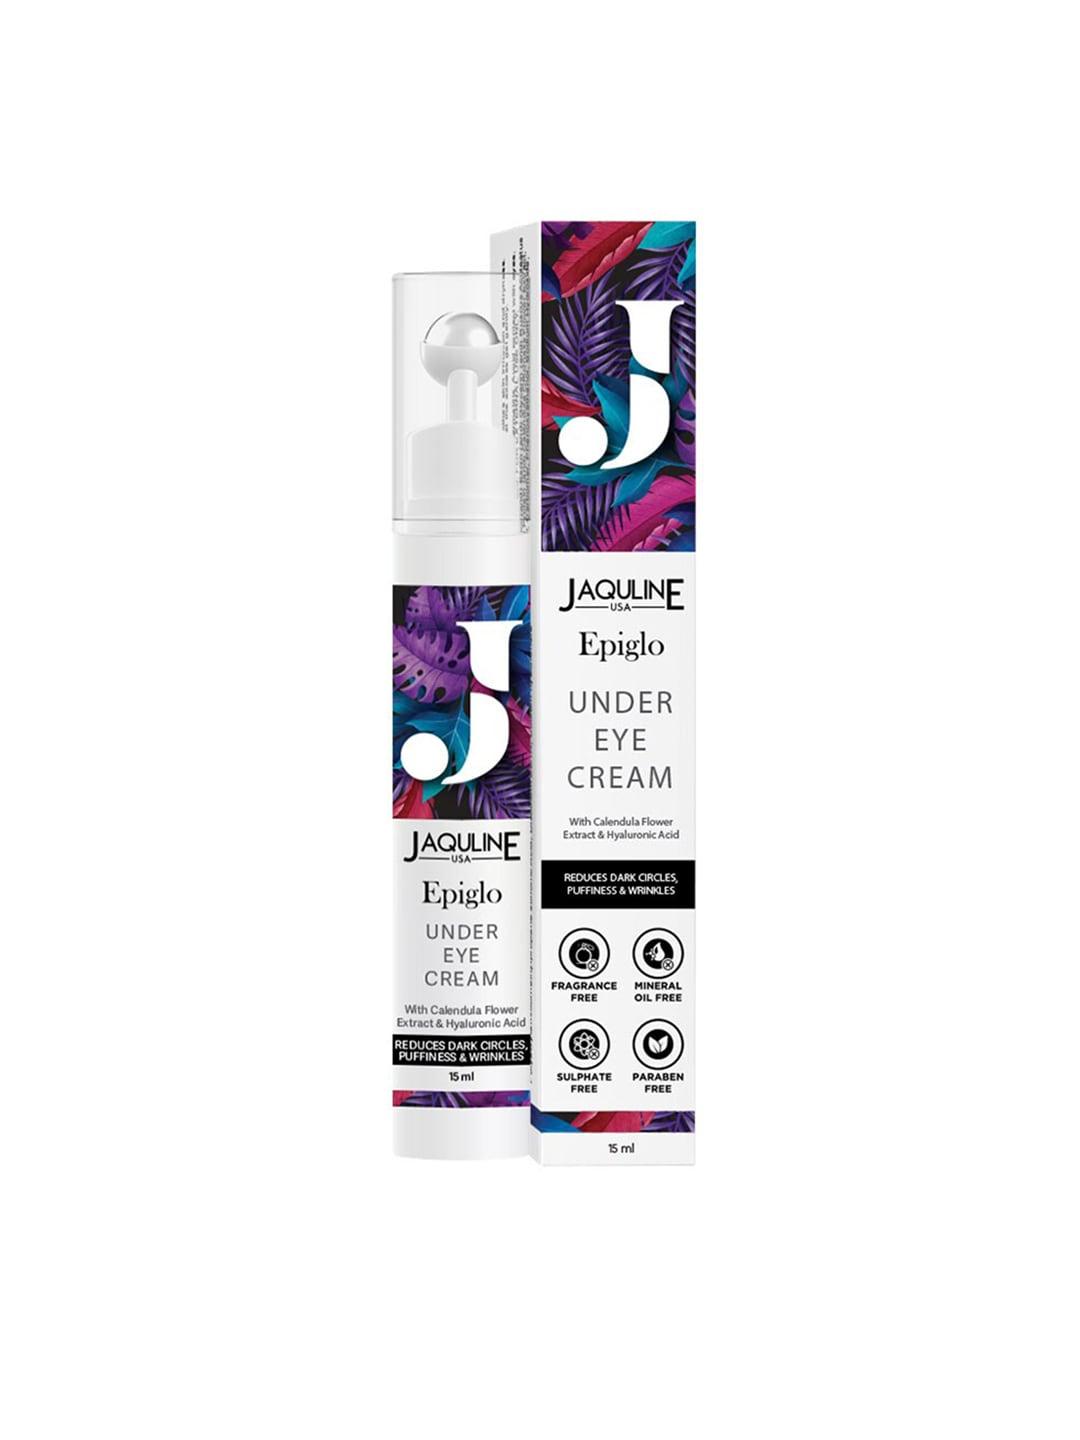 Jaquline USA Epiglo Under Eye Cream 15 ml